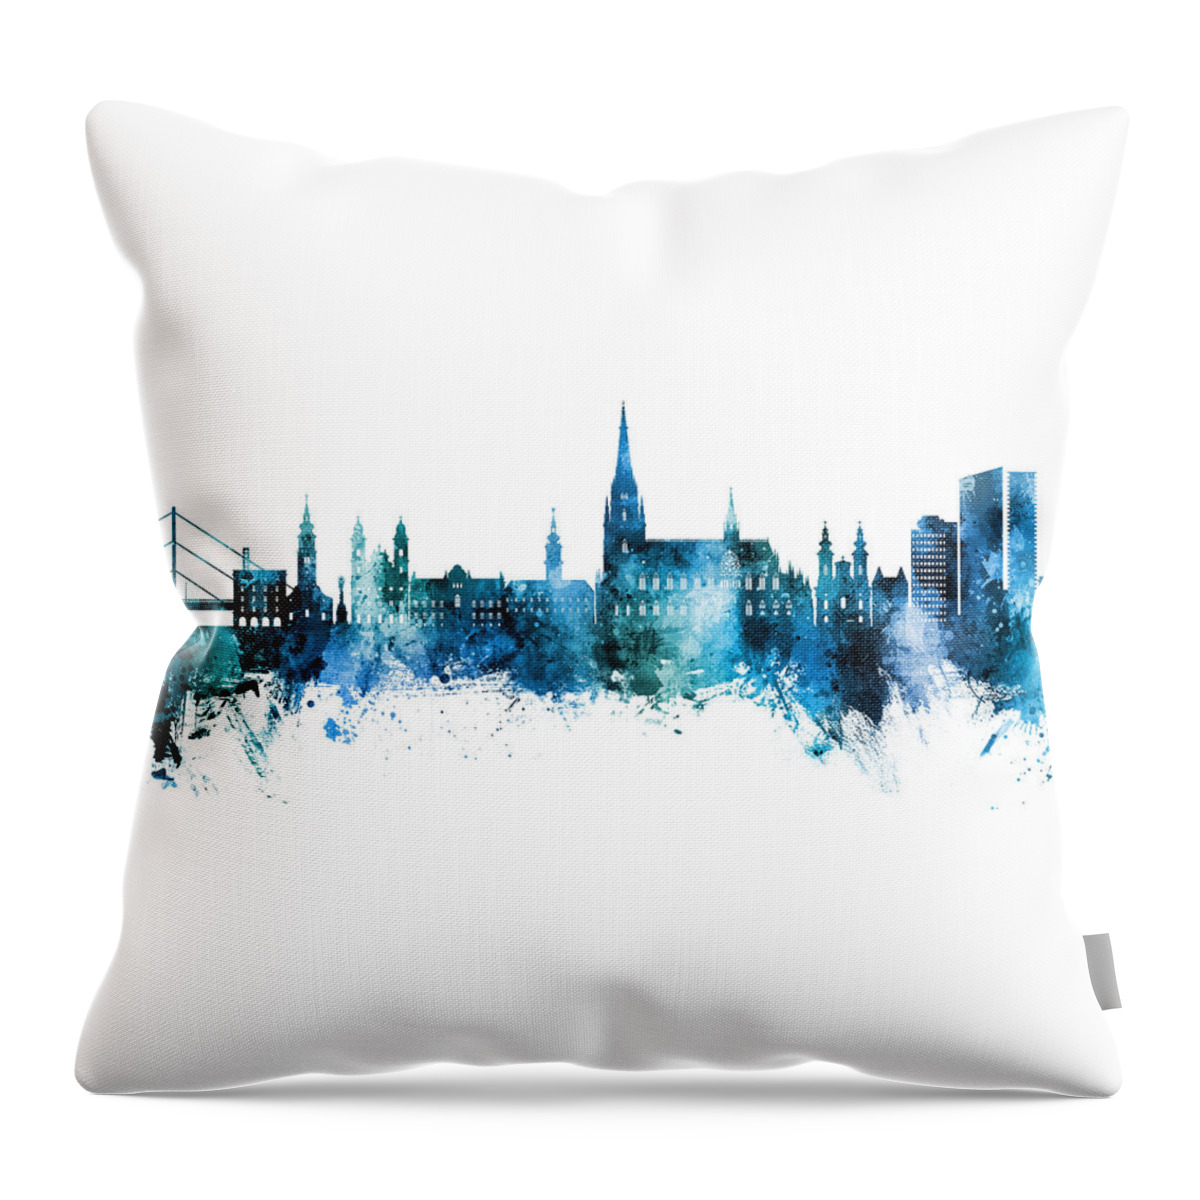 Linz Throw Pillow featuring the digital art Linz Austria Skyline #50 by Michael Tompsett